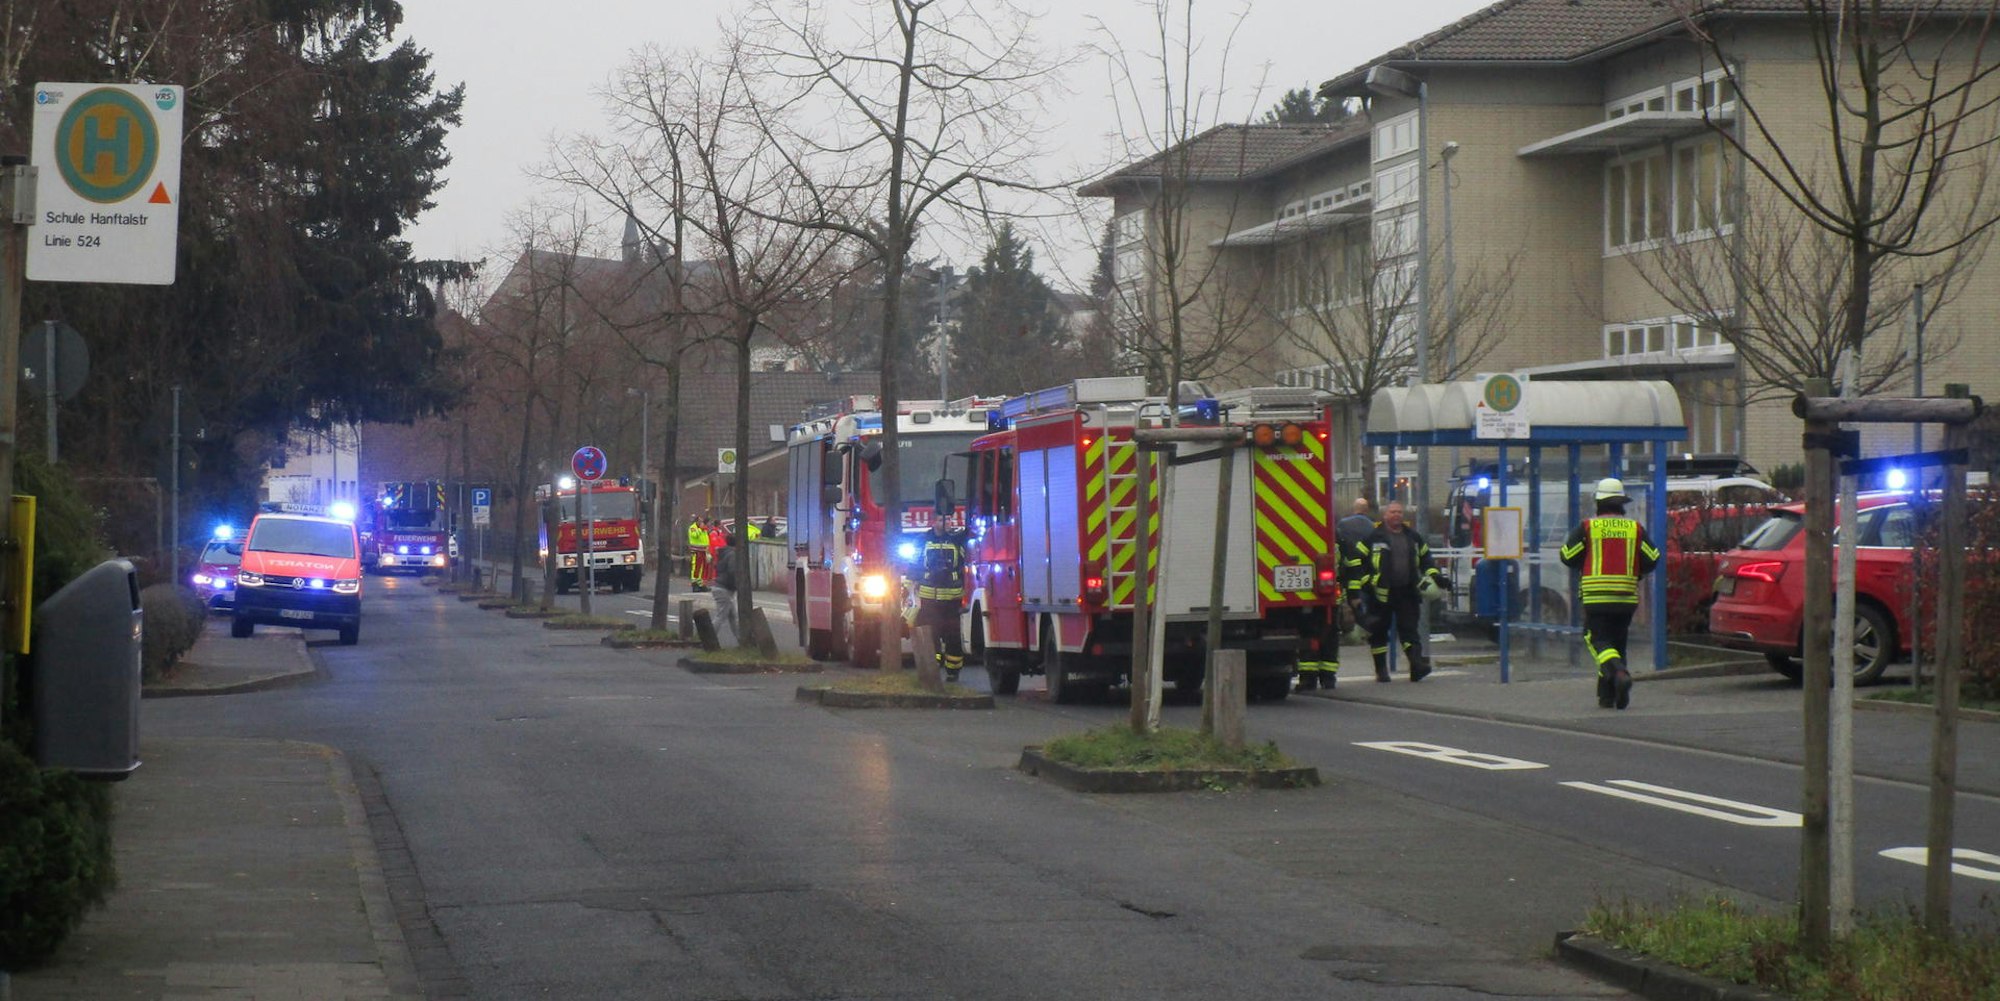 Großalarm in der Geisbach: Ein brennender Wasserkocher hatte die Feuerwehr auf den Plan gerufen.